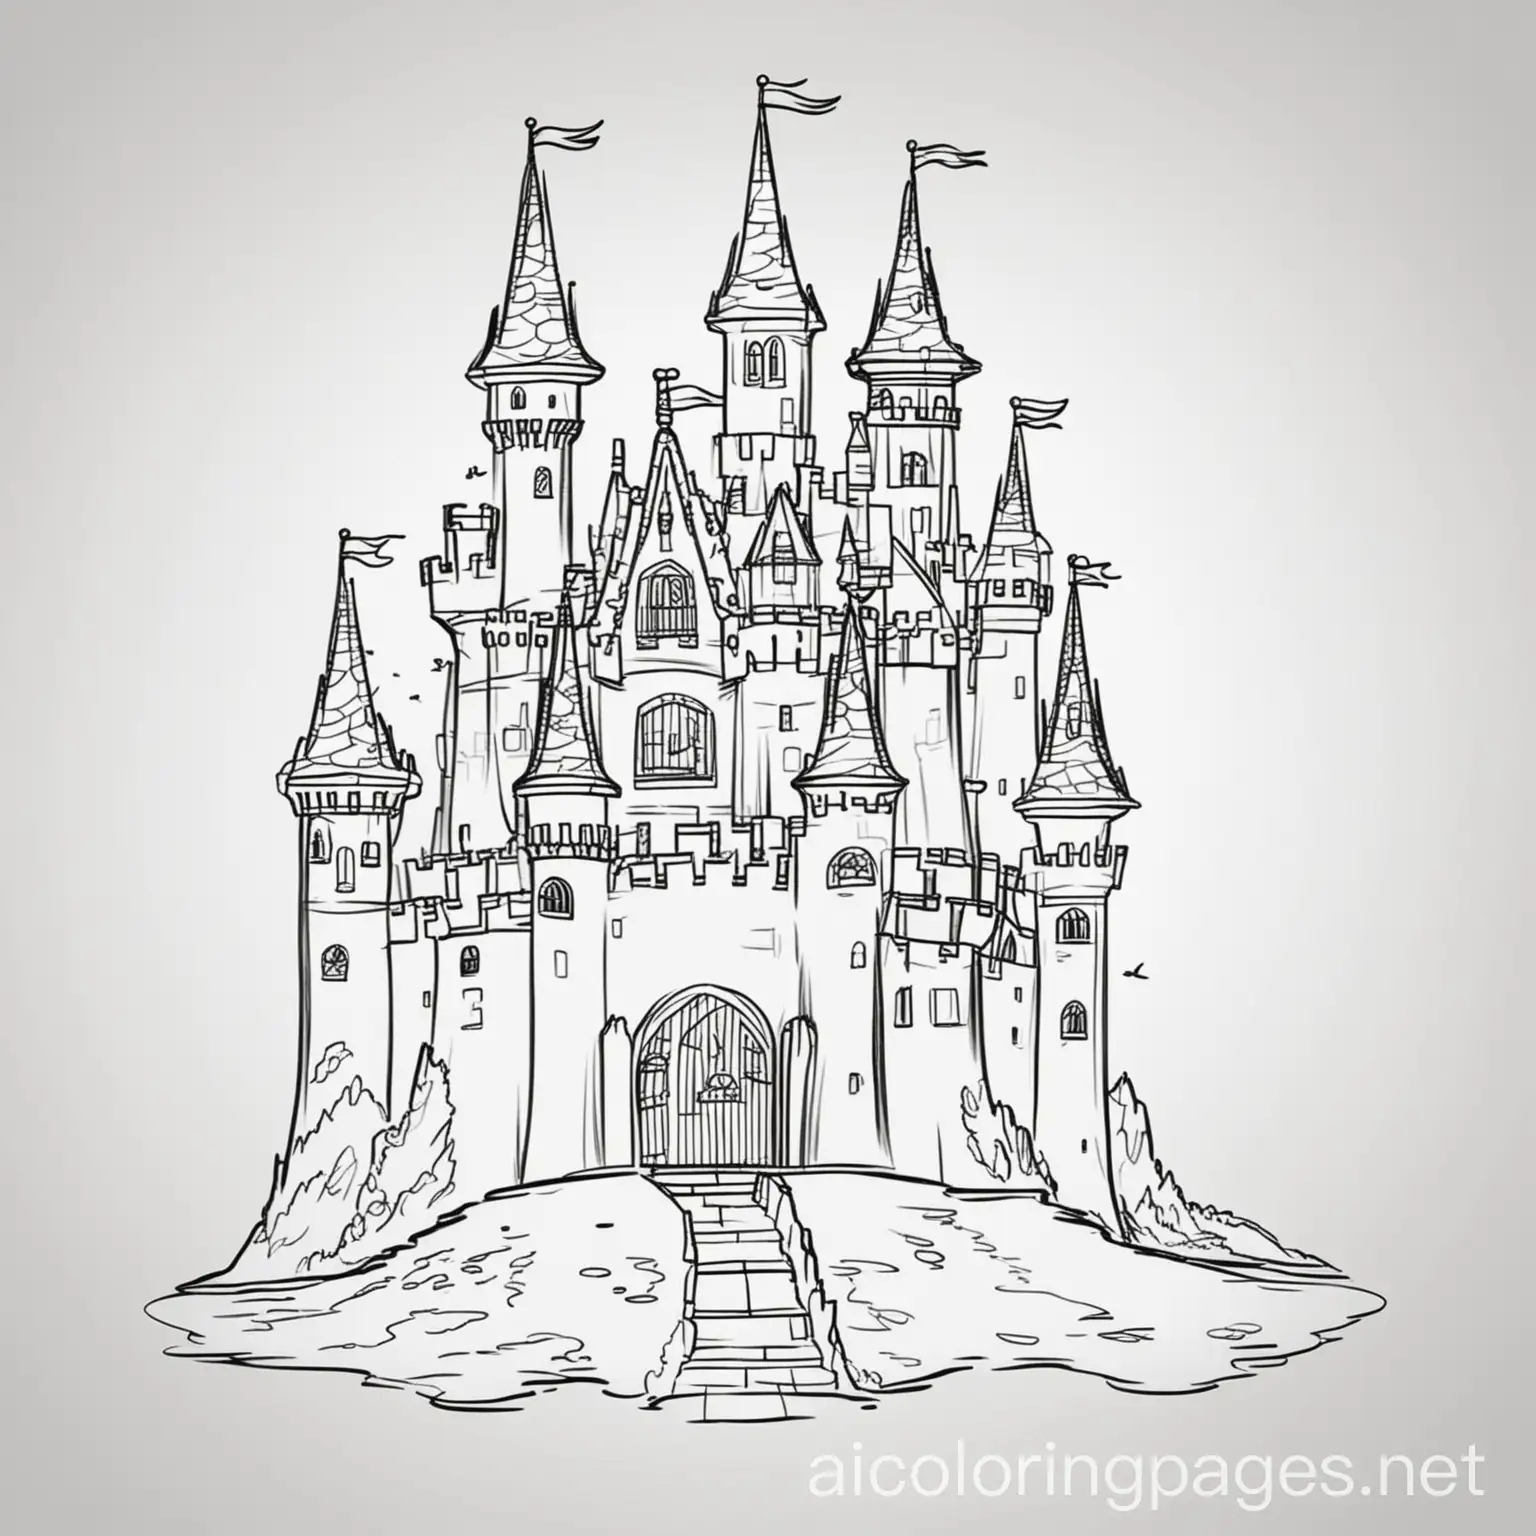 Princess-Castle-Coloring-Page-Simple-Line-Art-for-Kids